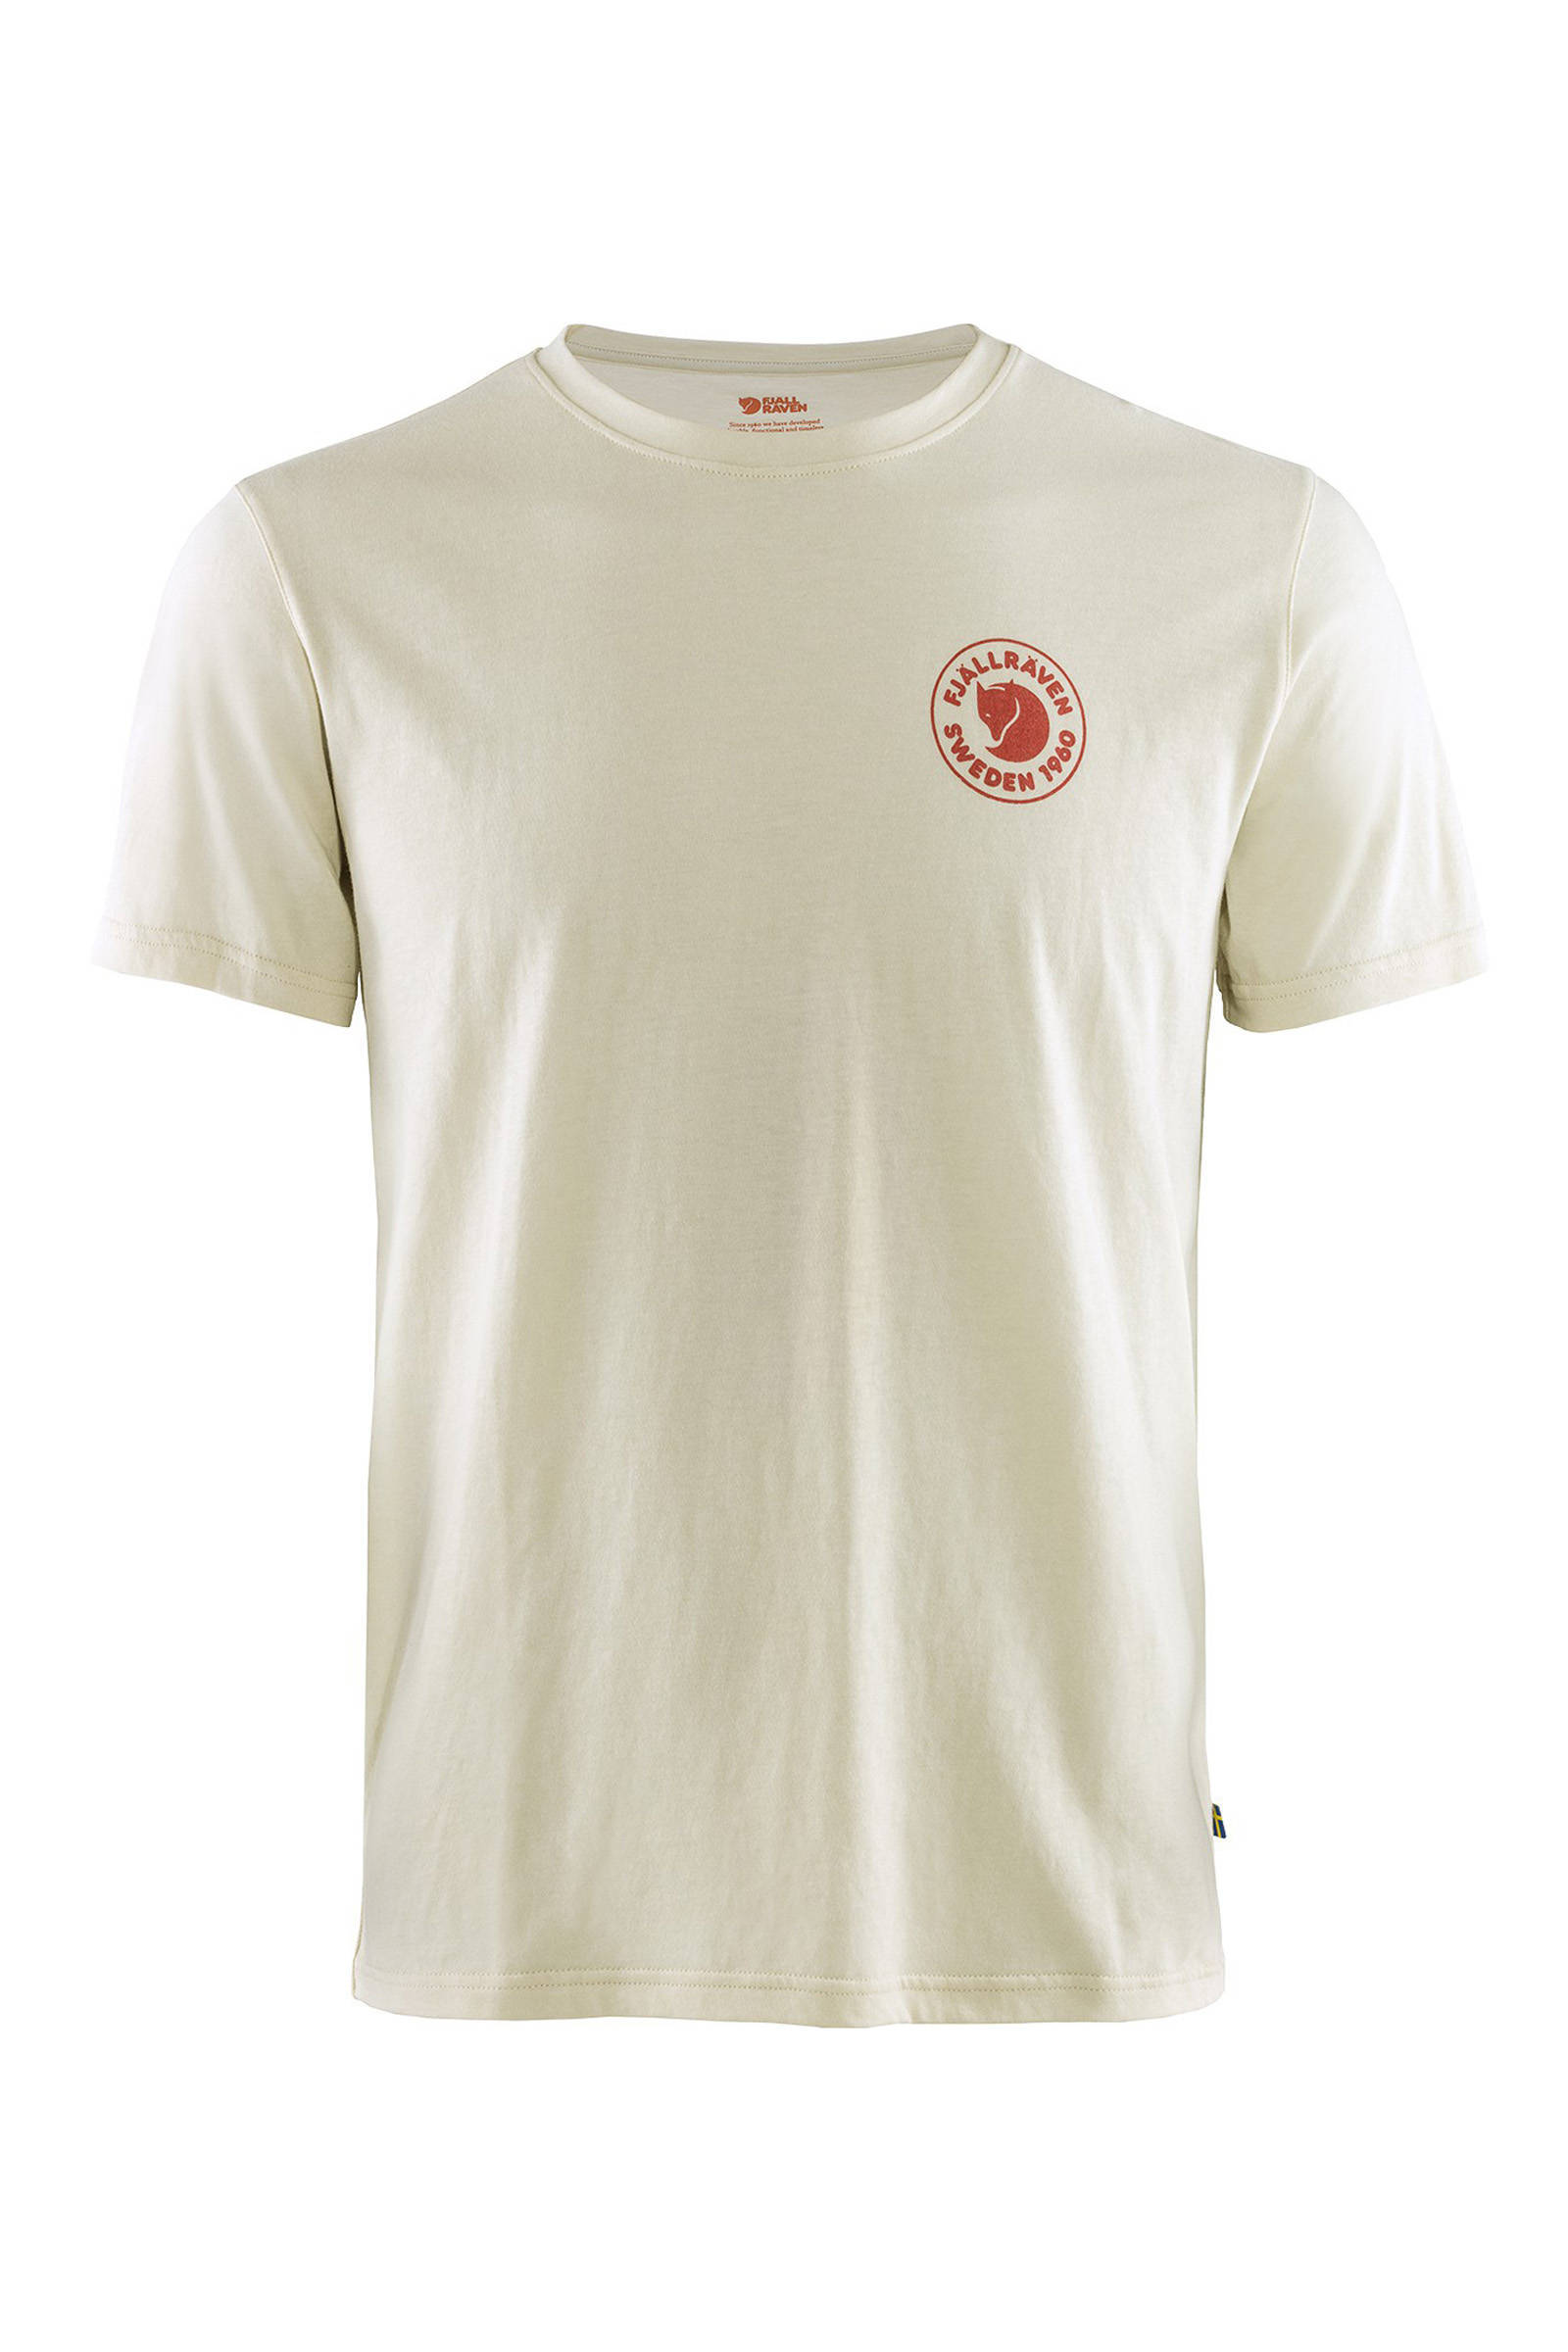 Fj&#xE4, llr&#xE4, ven T shirt man logo f87313.113 t shirt online kopen